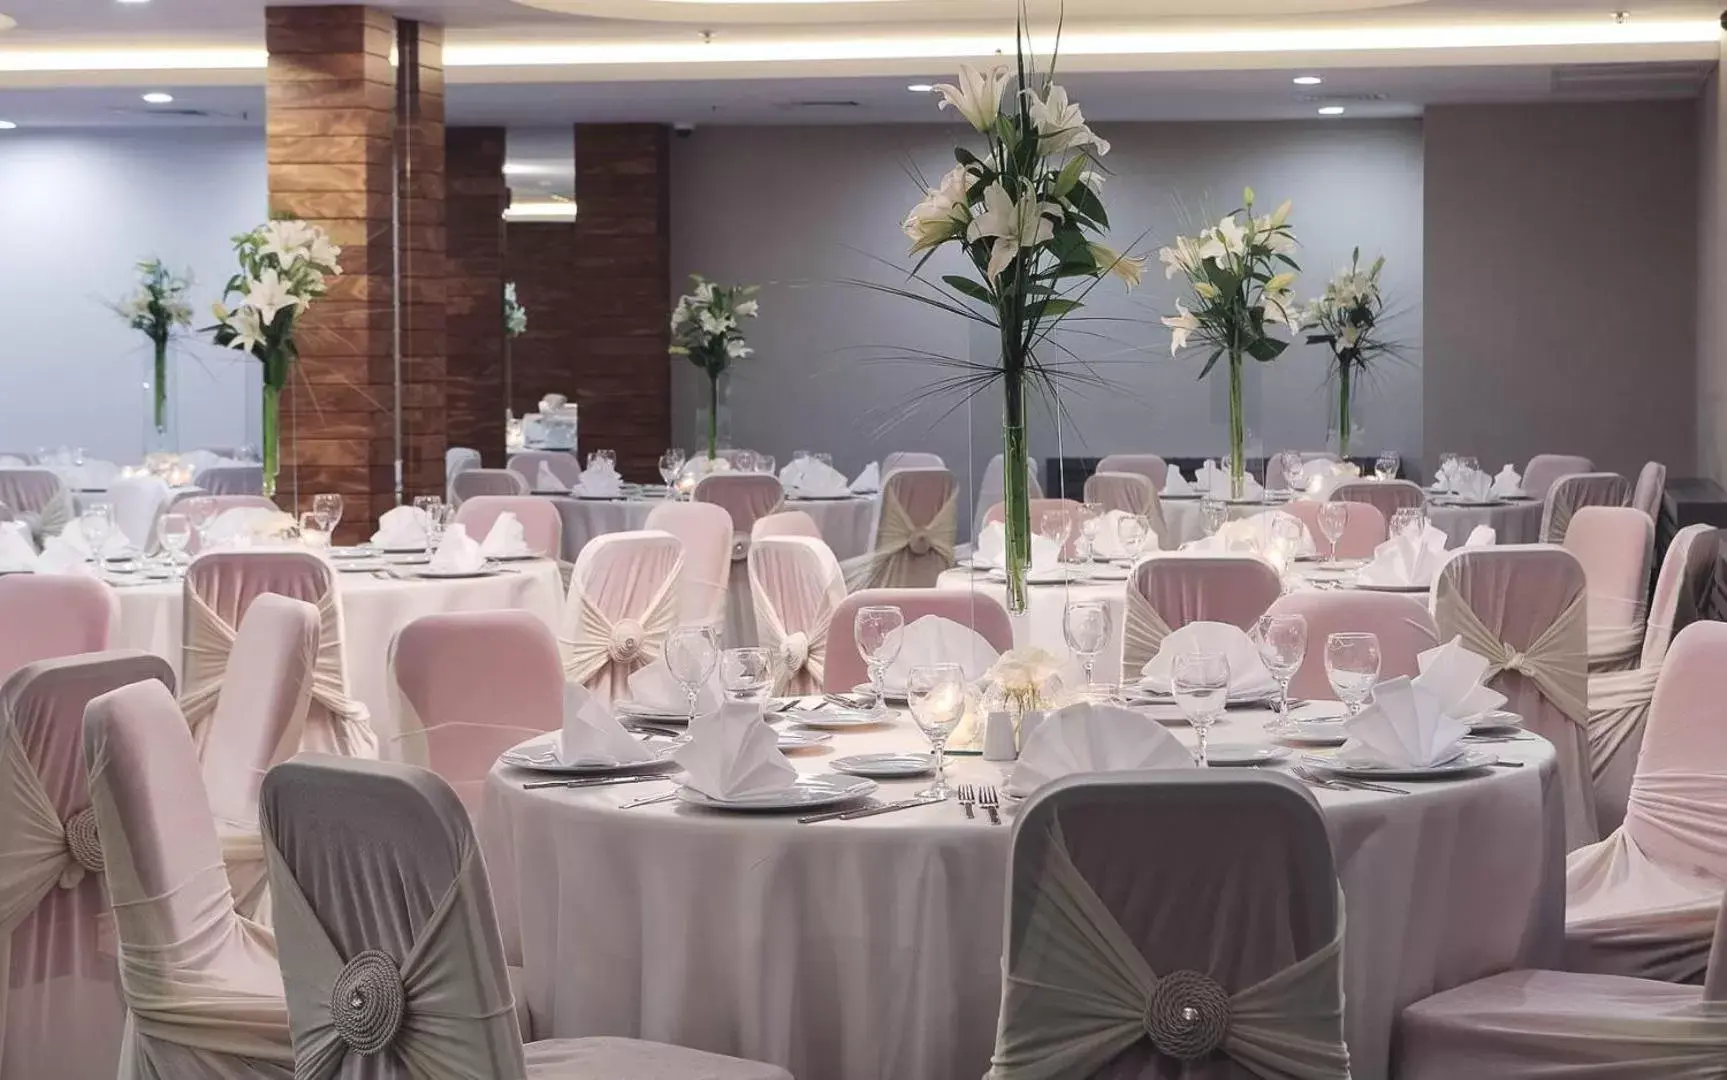 Banquet/Function facilities, Banquet Facilities in Mimi Hotel Ankara